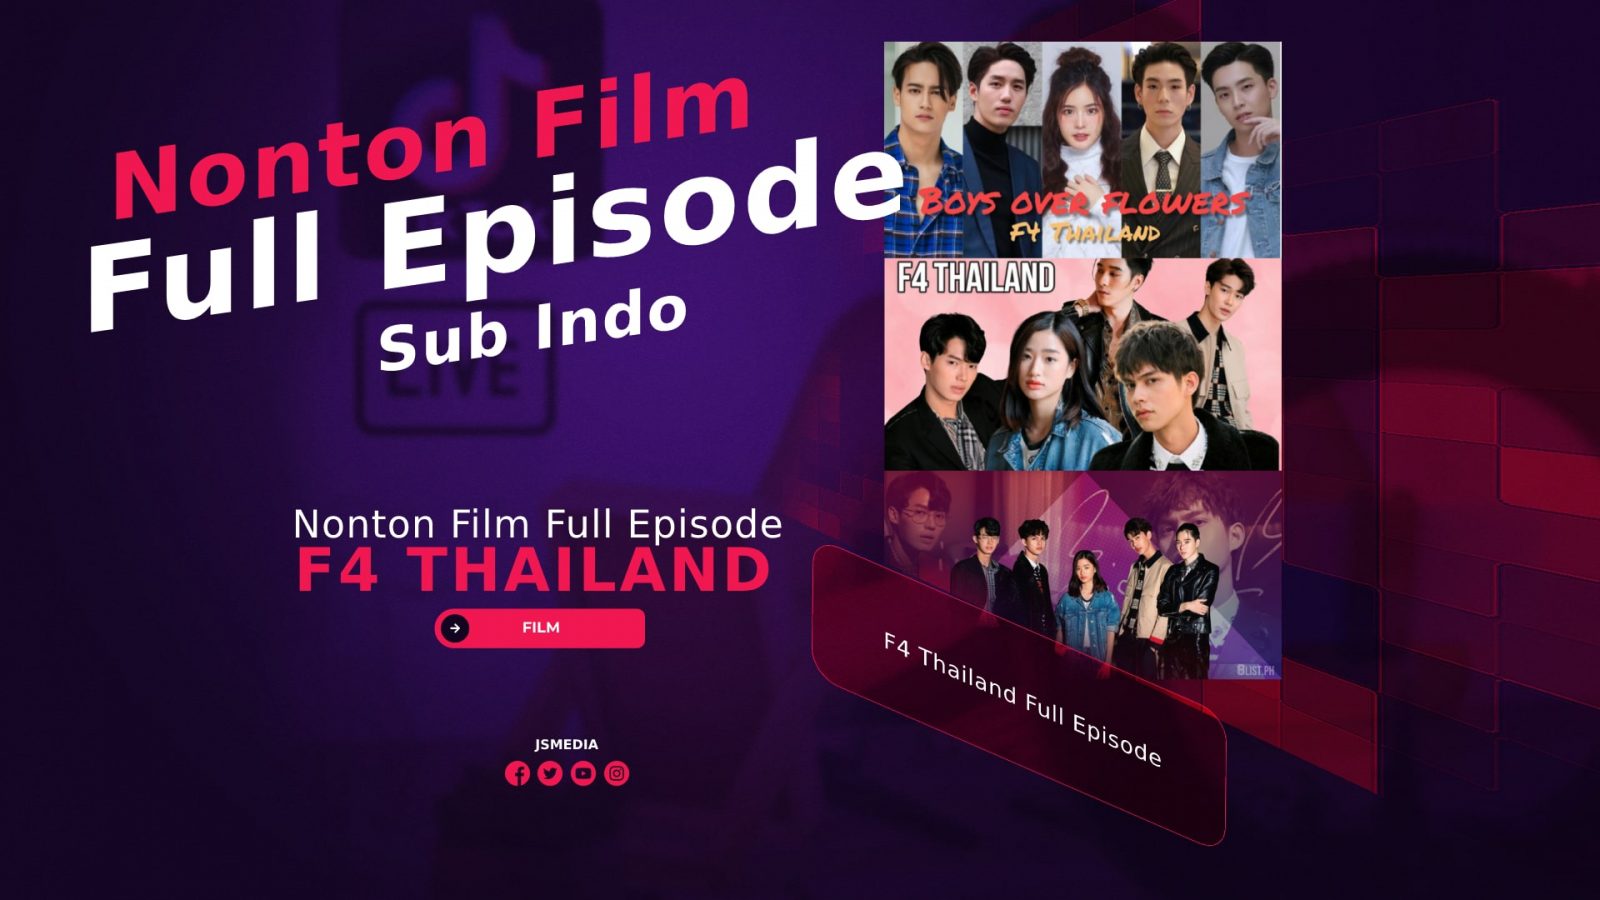 Nonton Film F4 Thailand Full Episode Sub Indo Telegram Terbaru